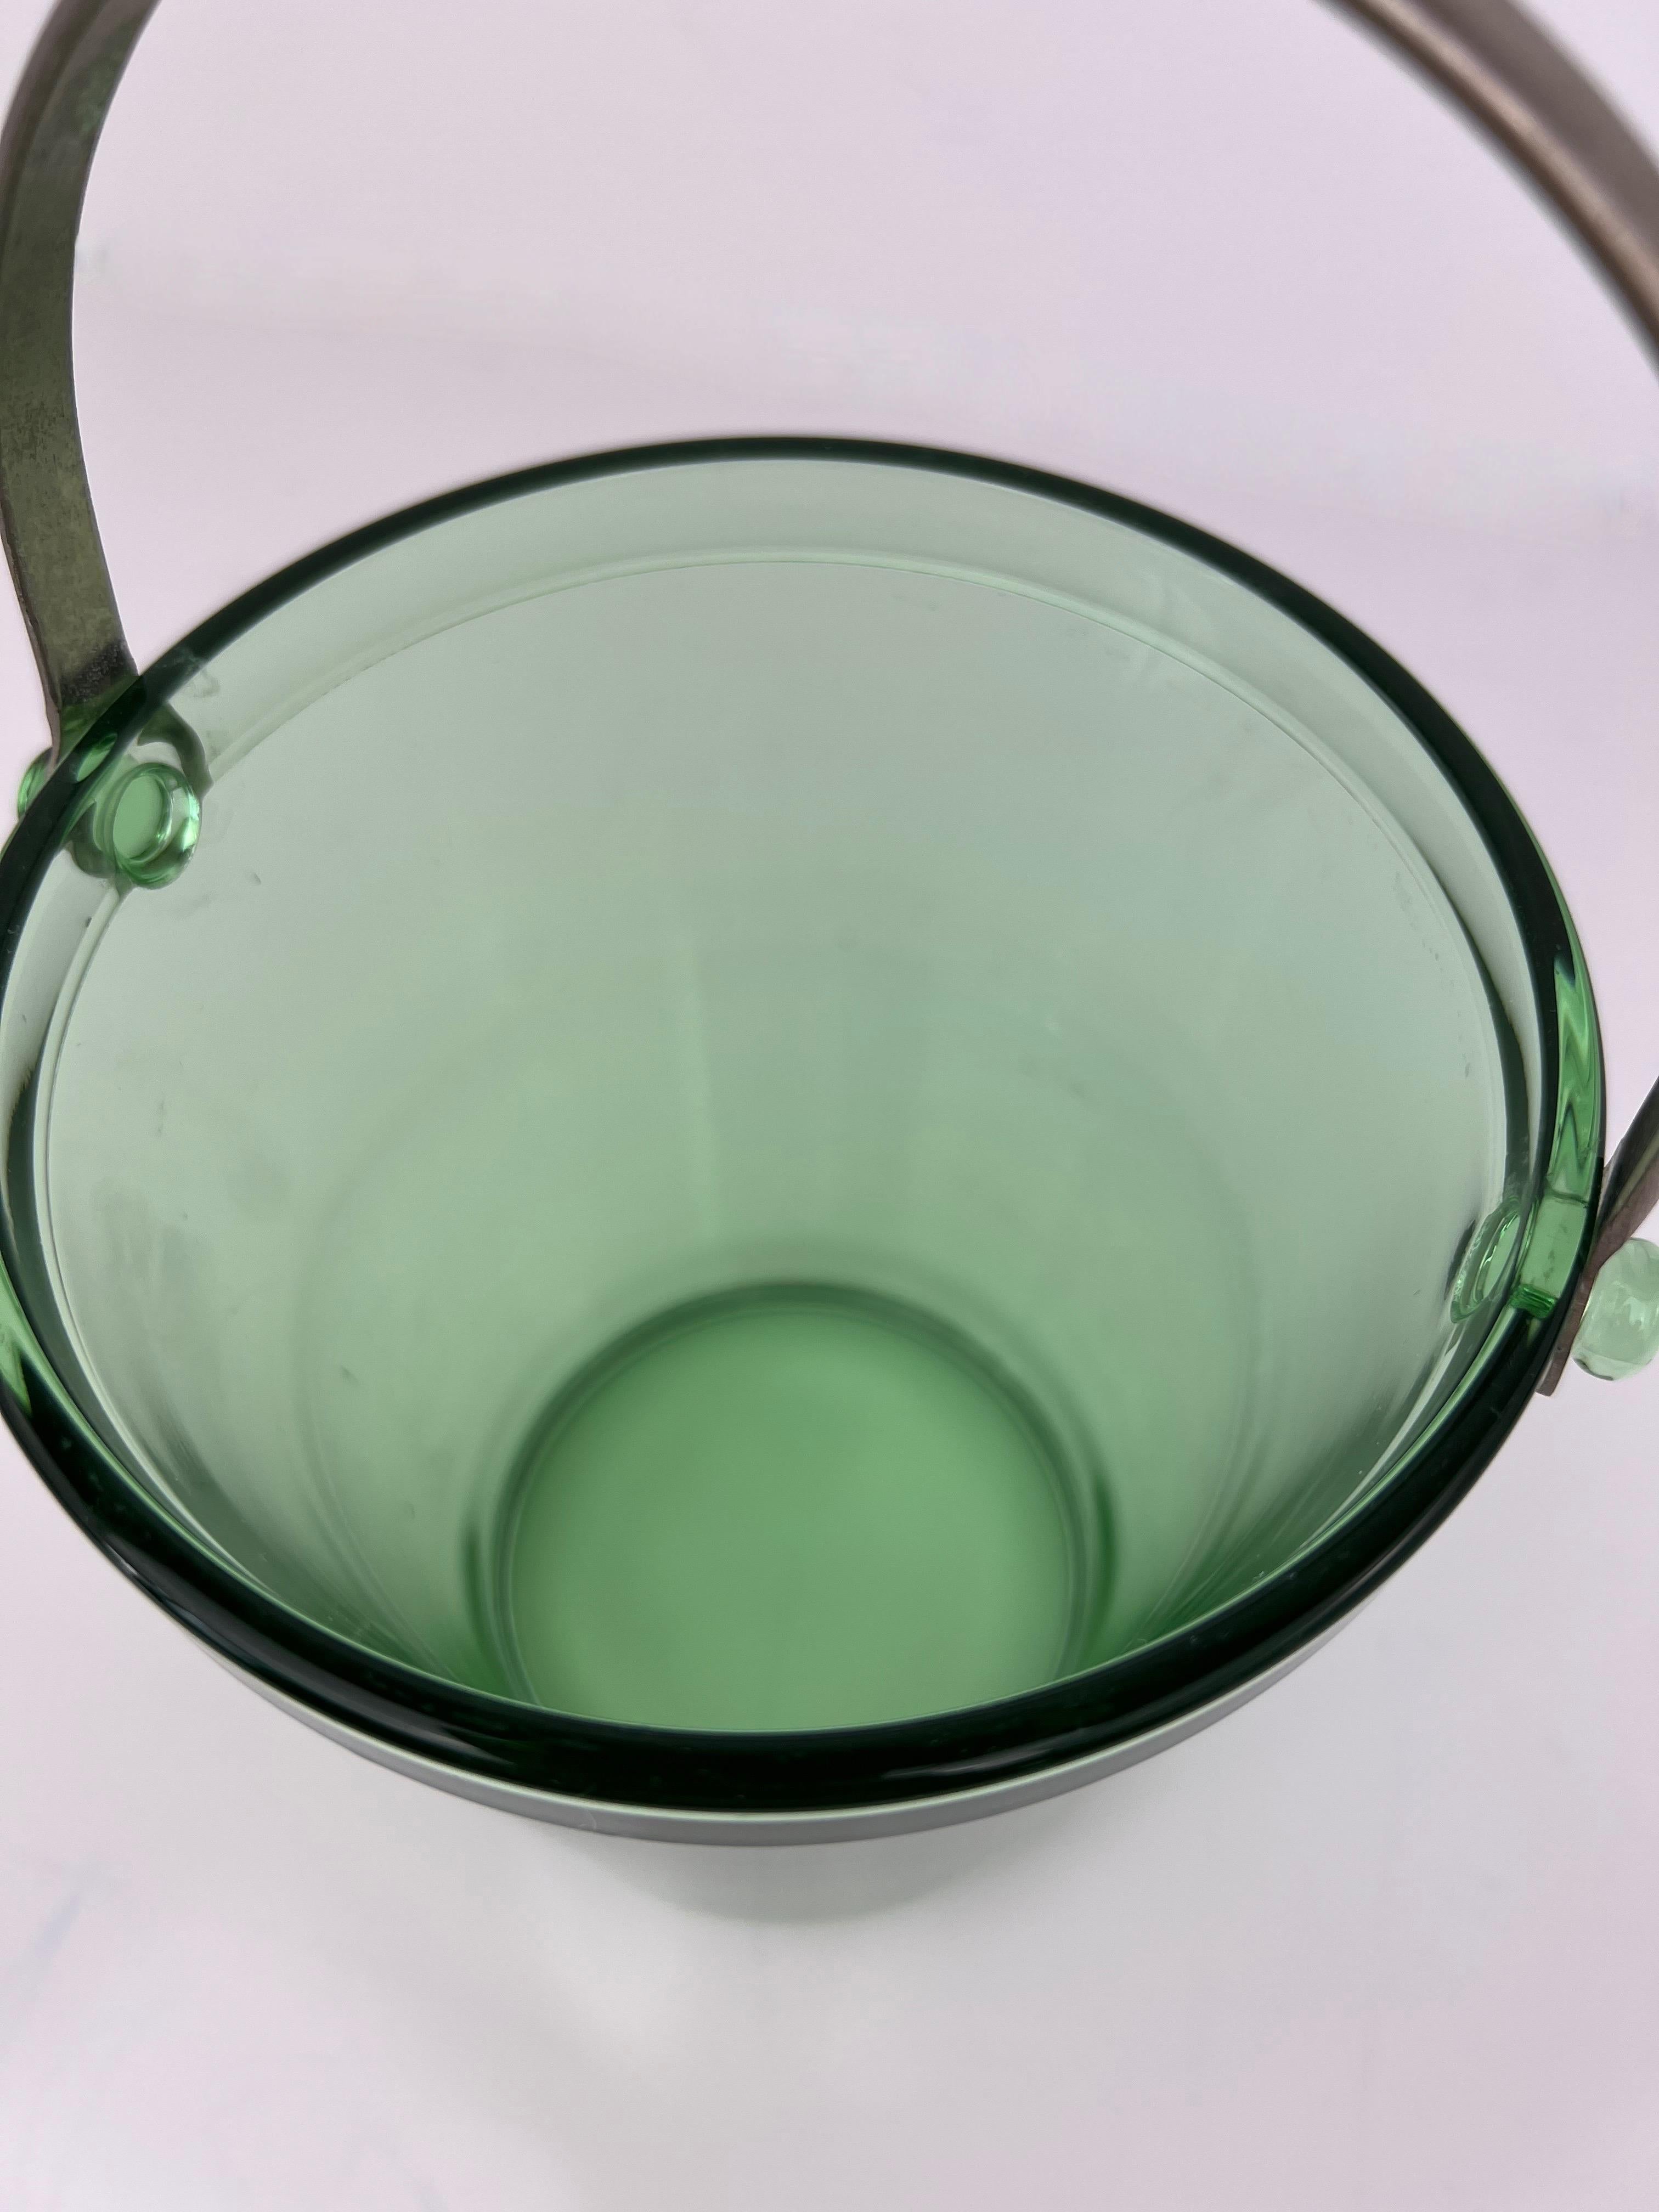 Seau à glace en verre vert du milieu du siècle avec poignée en acier inoxydable. Petite taille parfaite pour un chariot de bar.

5 15/16